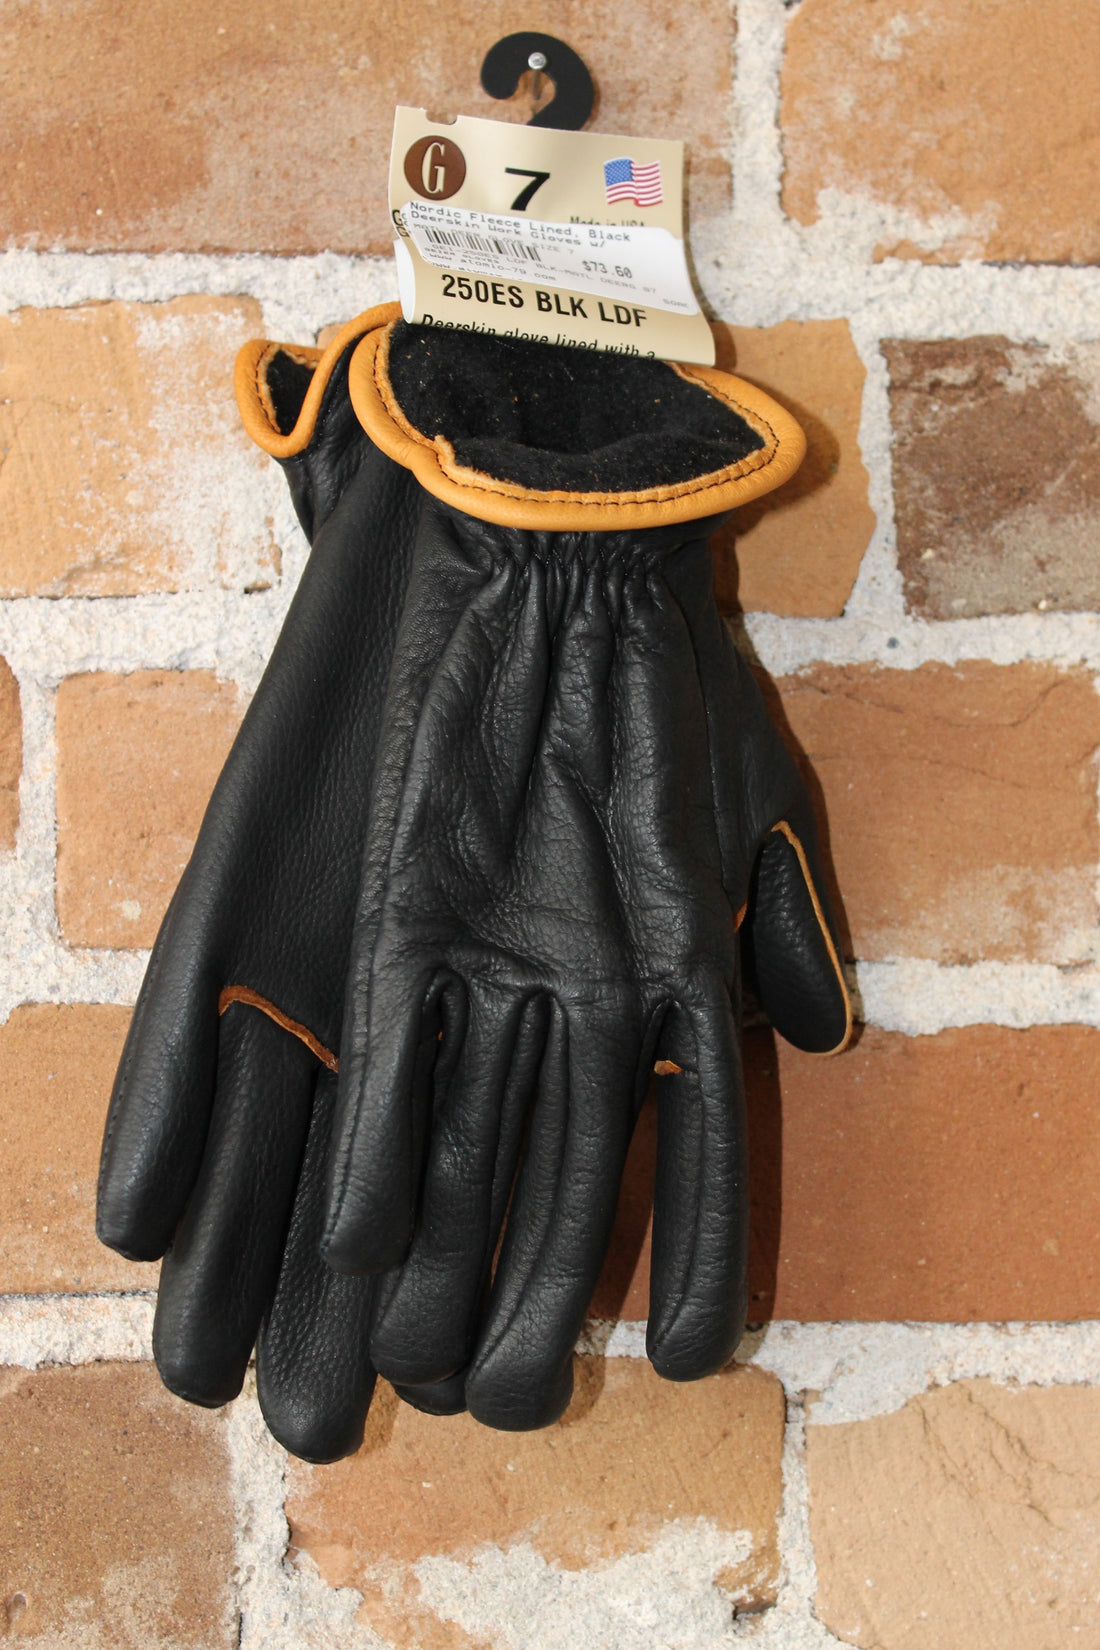 Nordic Fleece Lined Deerskin Work Gloves In Black view of gloves